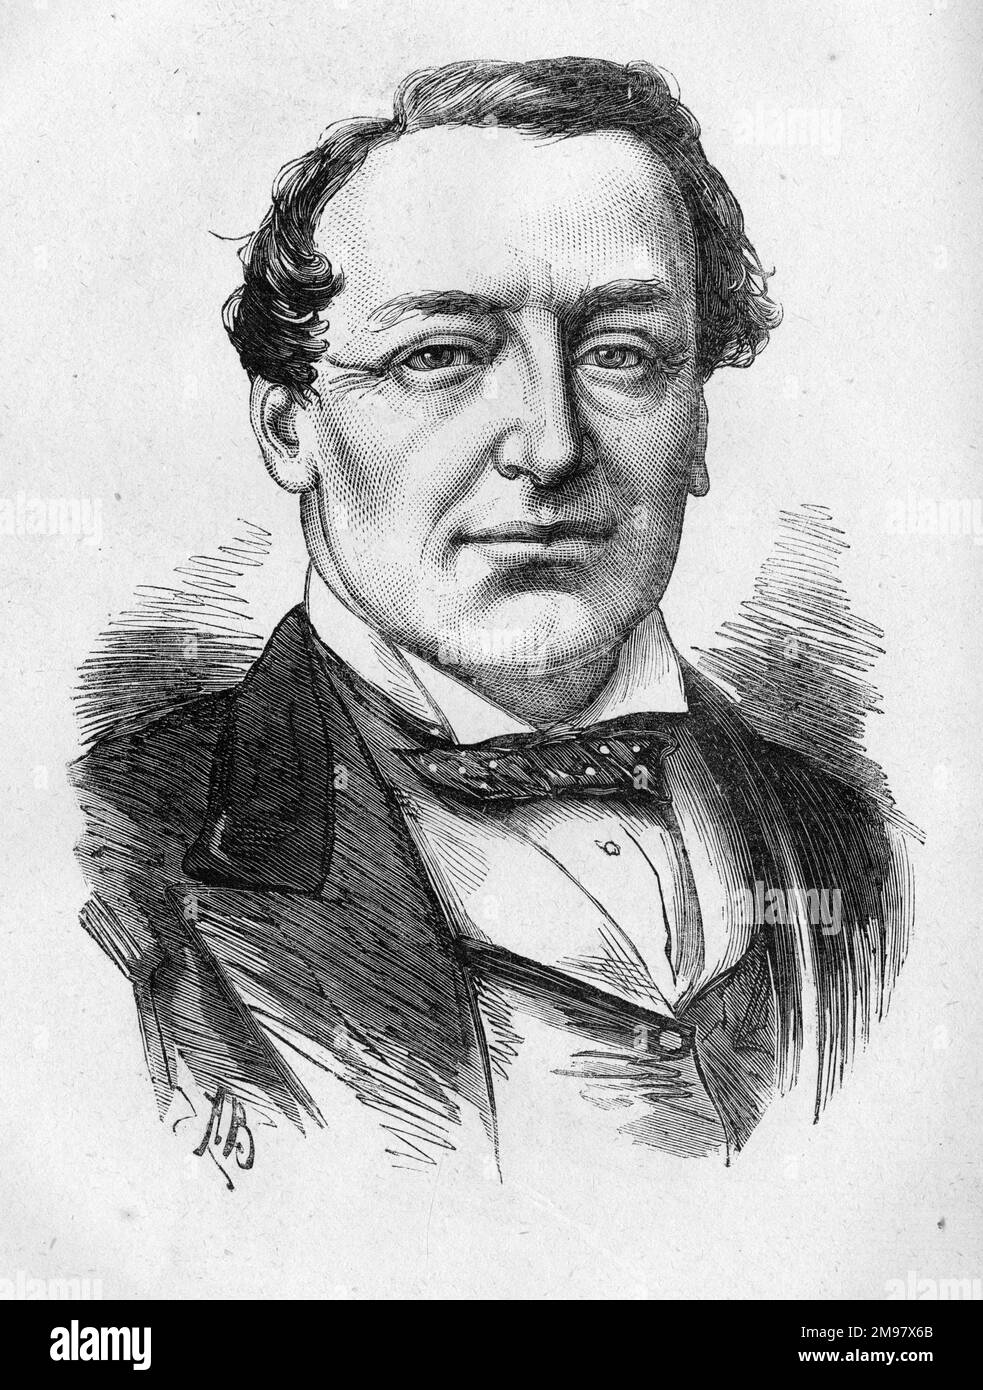 Retrato de Samuel (Sam) Anderson Emery (1814-1881), actor inglés. Foto de stock